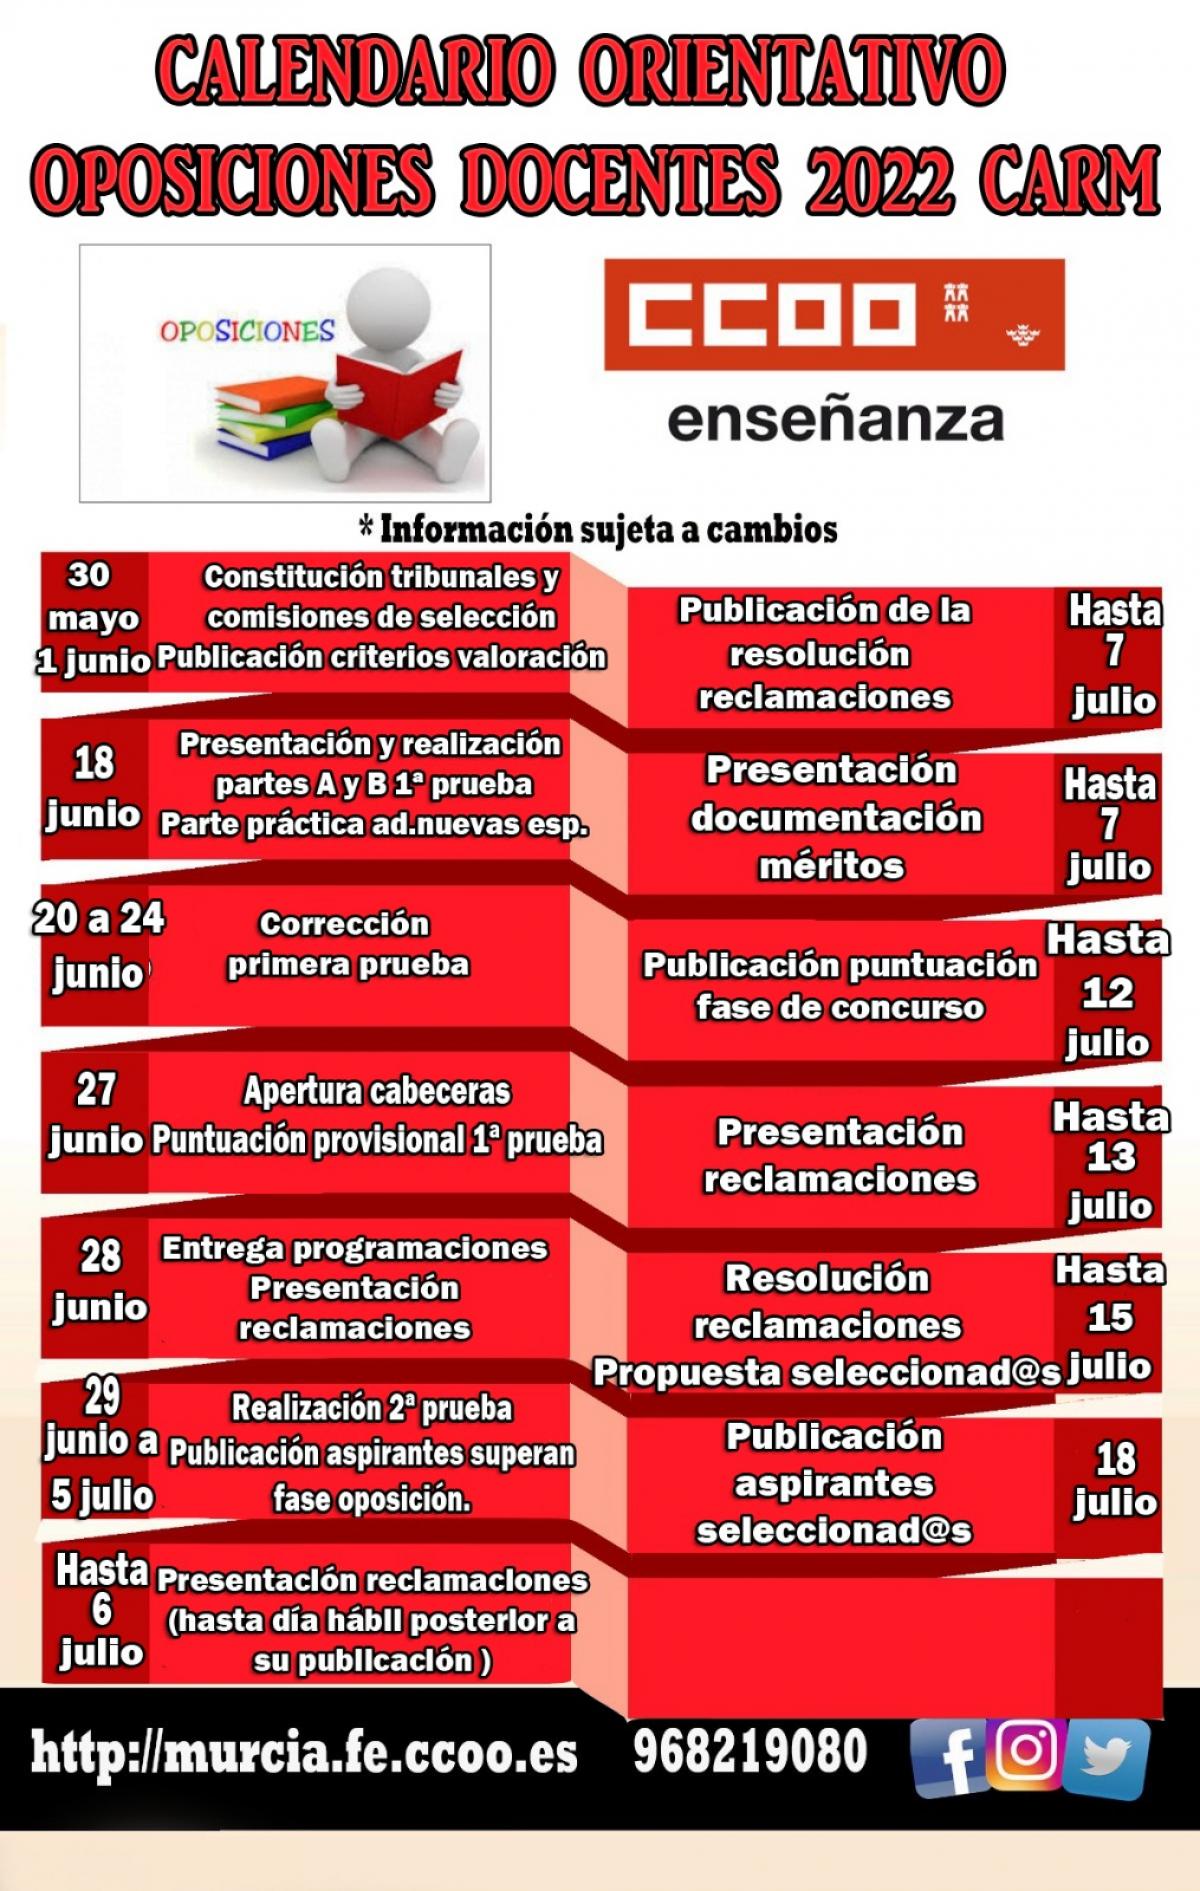 Oposiciones docentes 2022 - Calendario orientativo